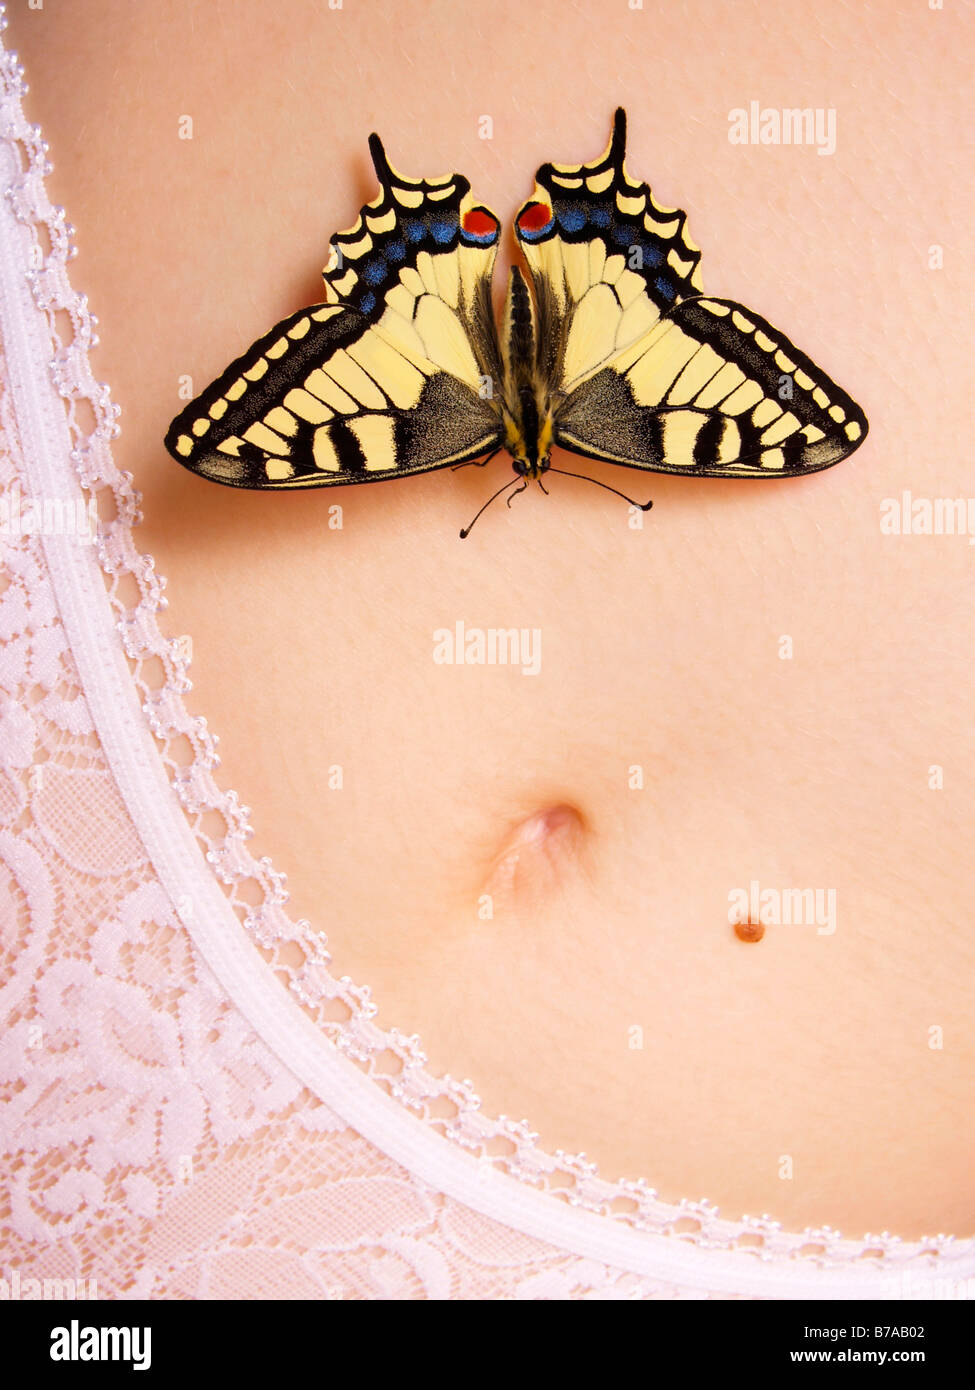 Old World Swallowtail (Papilio machaon) on women's abdomen Stock Photo